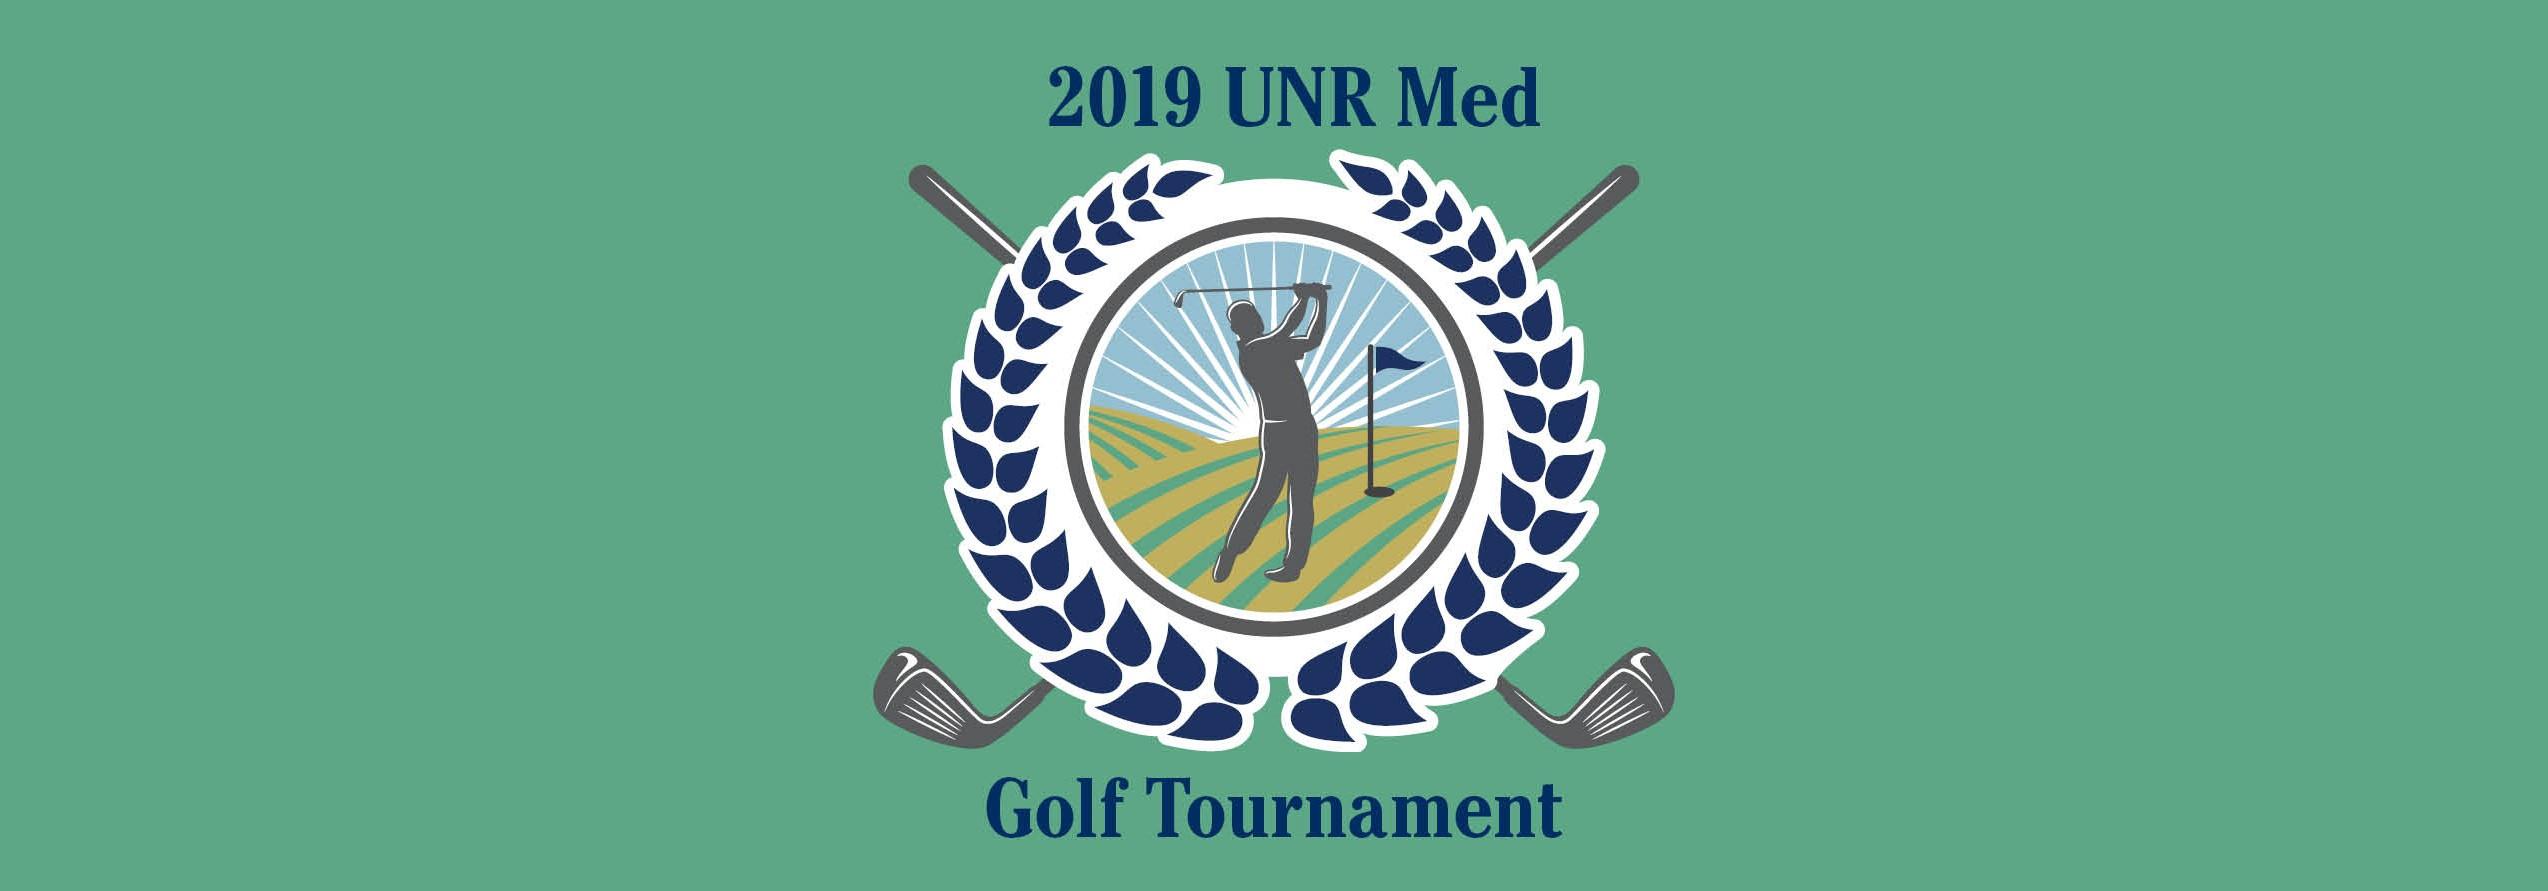 UNR Med 2019 Best Ball Scramble Golf Tournament